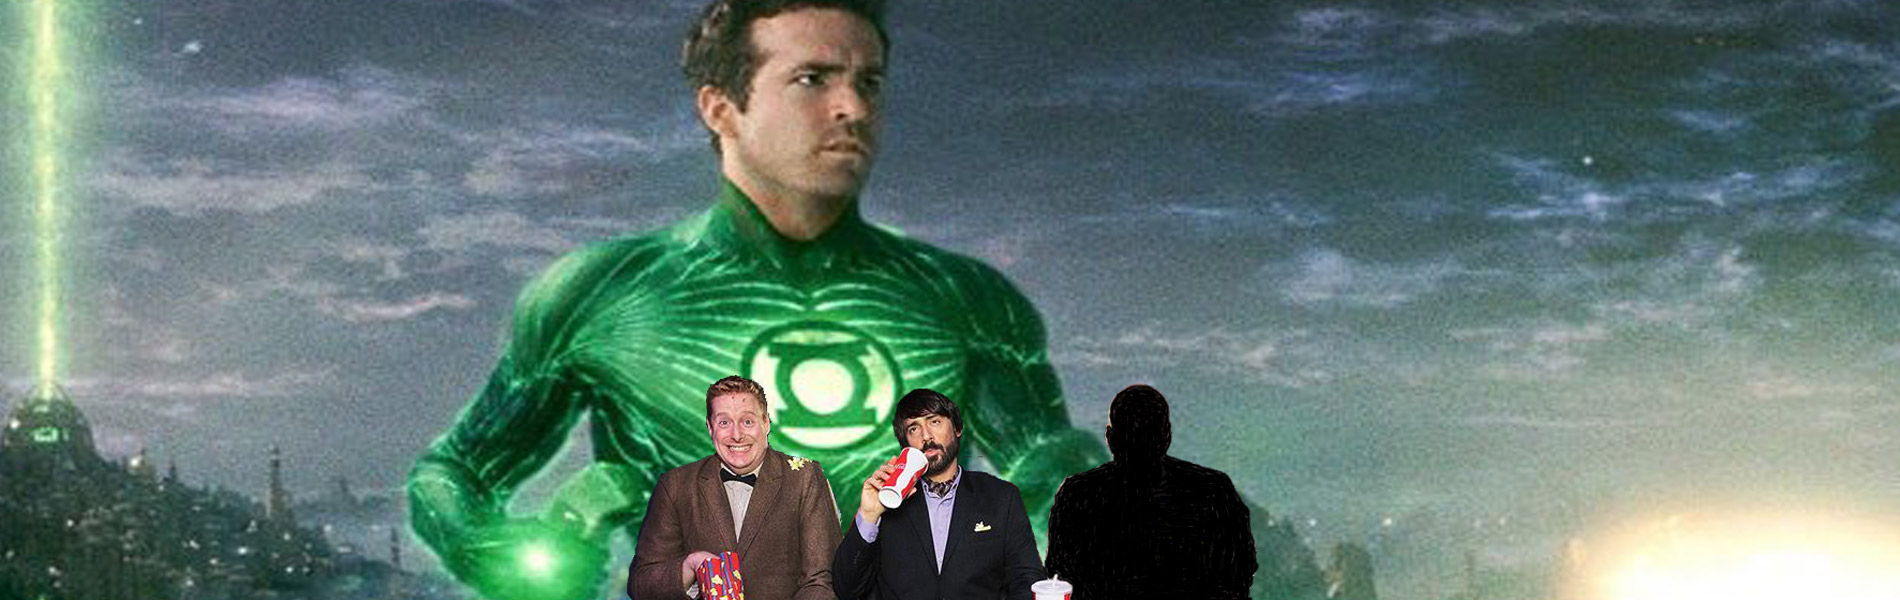 Gentlemen Hecklers present Green Lantern